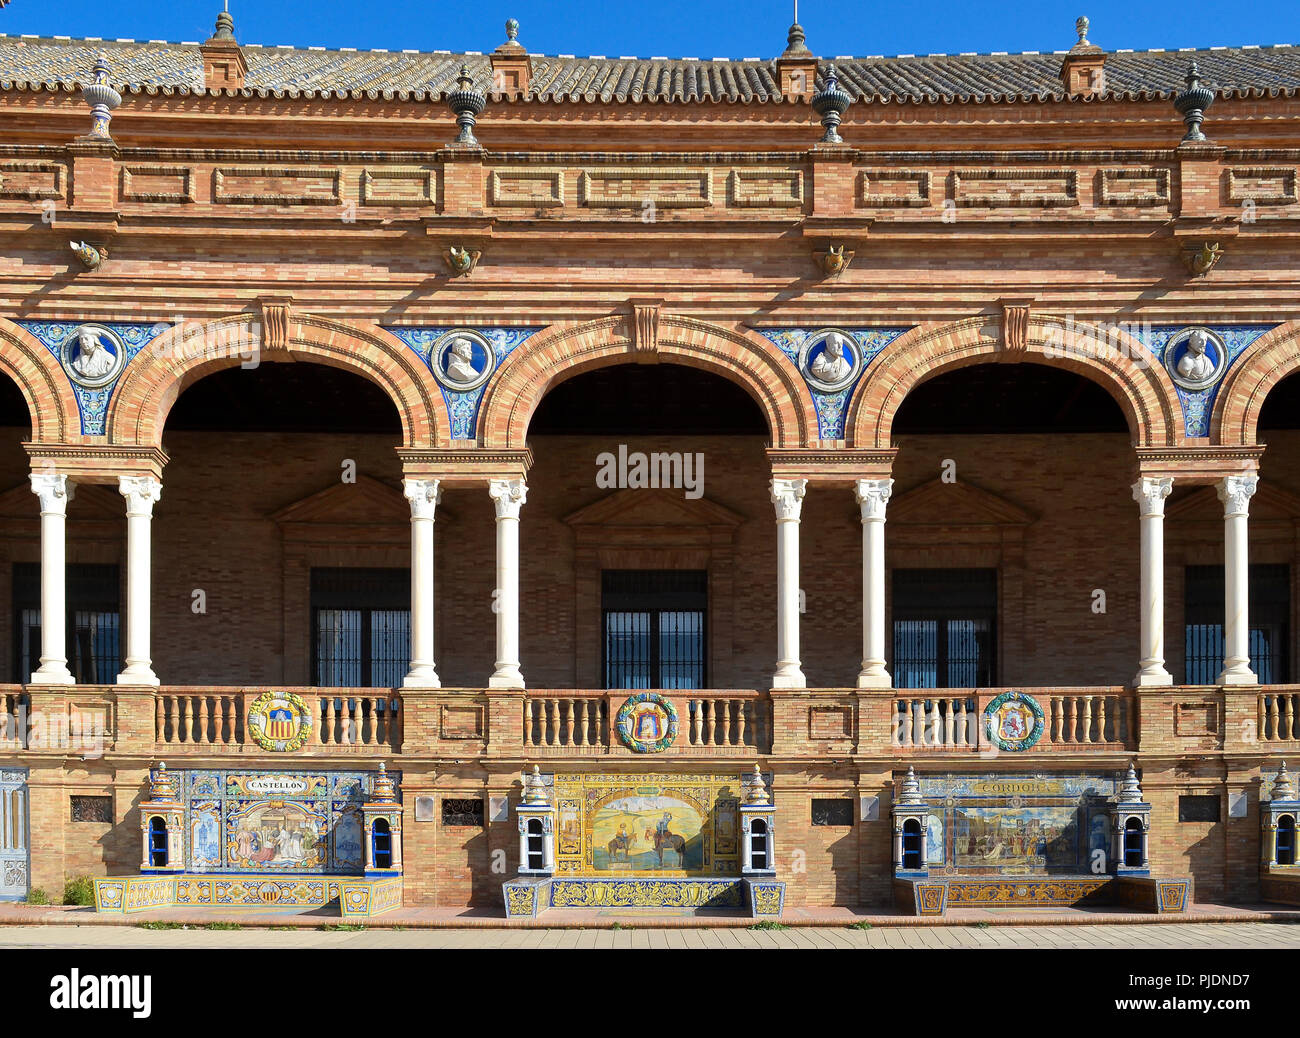 Front facade detail at Plaza de Espana, Seville, Spain Stock Photo